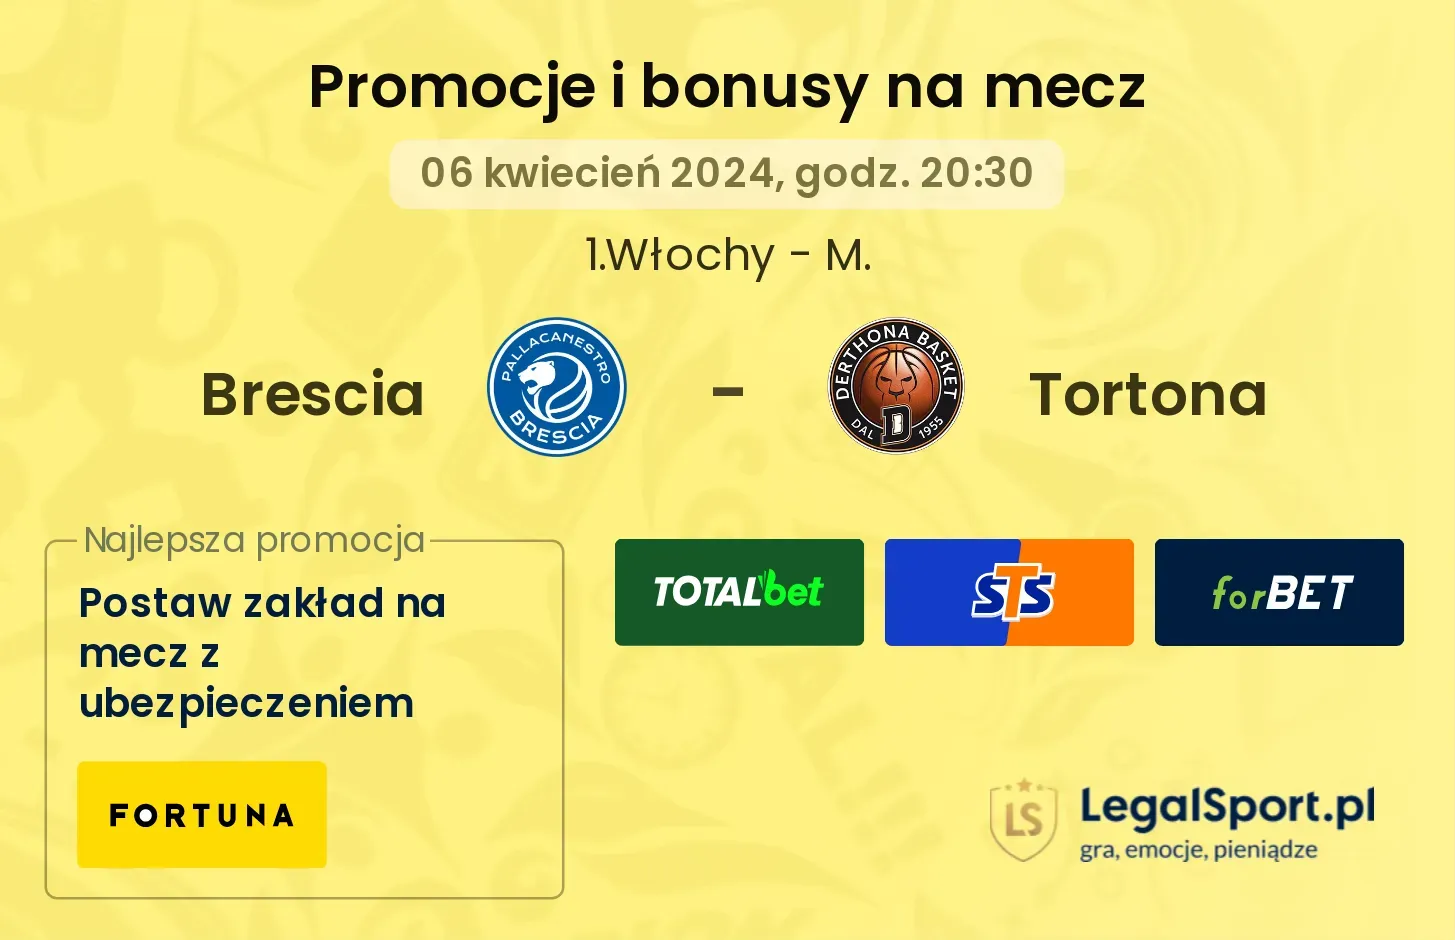 Brescia - Tortona promocje bonusy na mecz